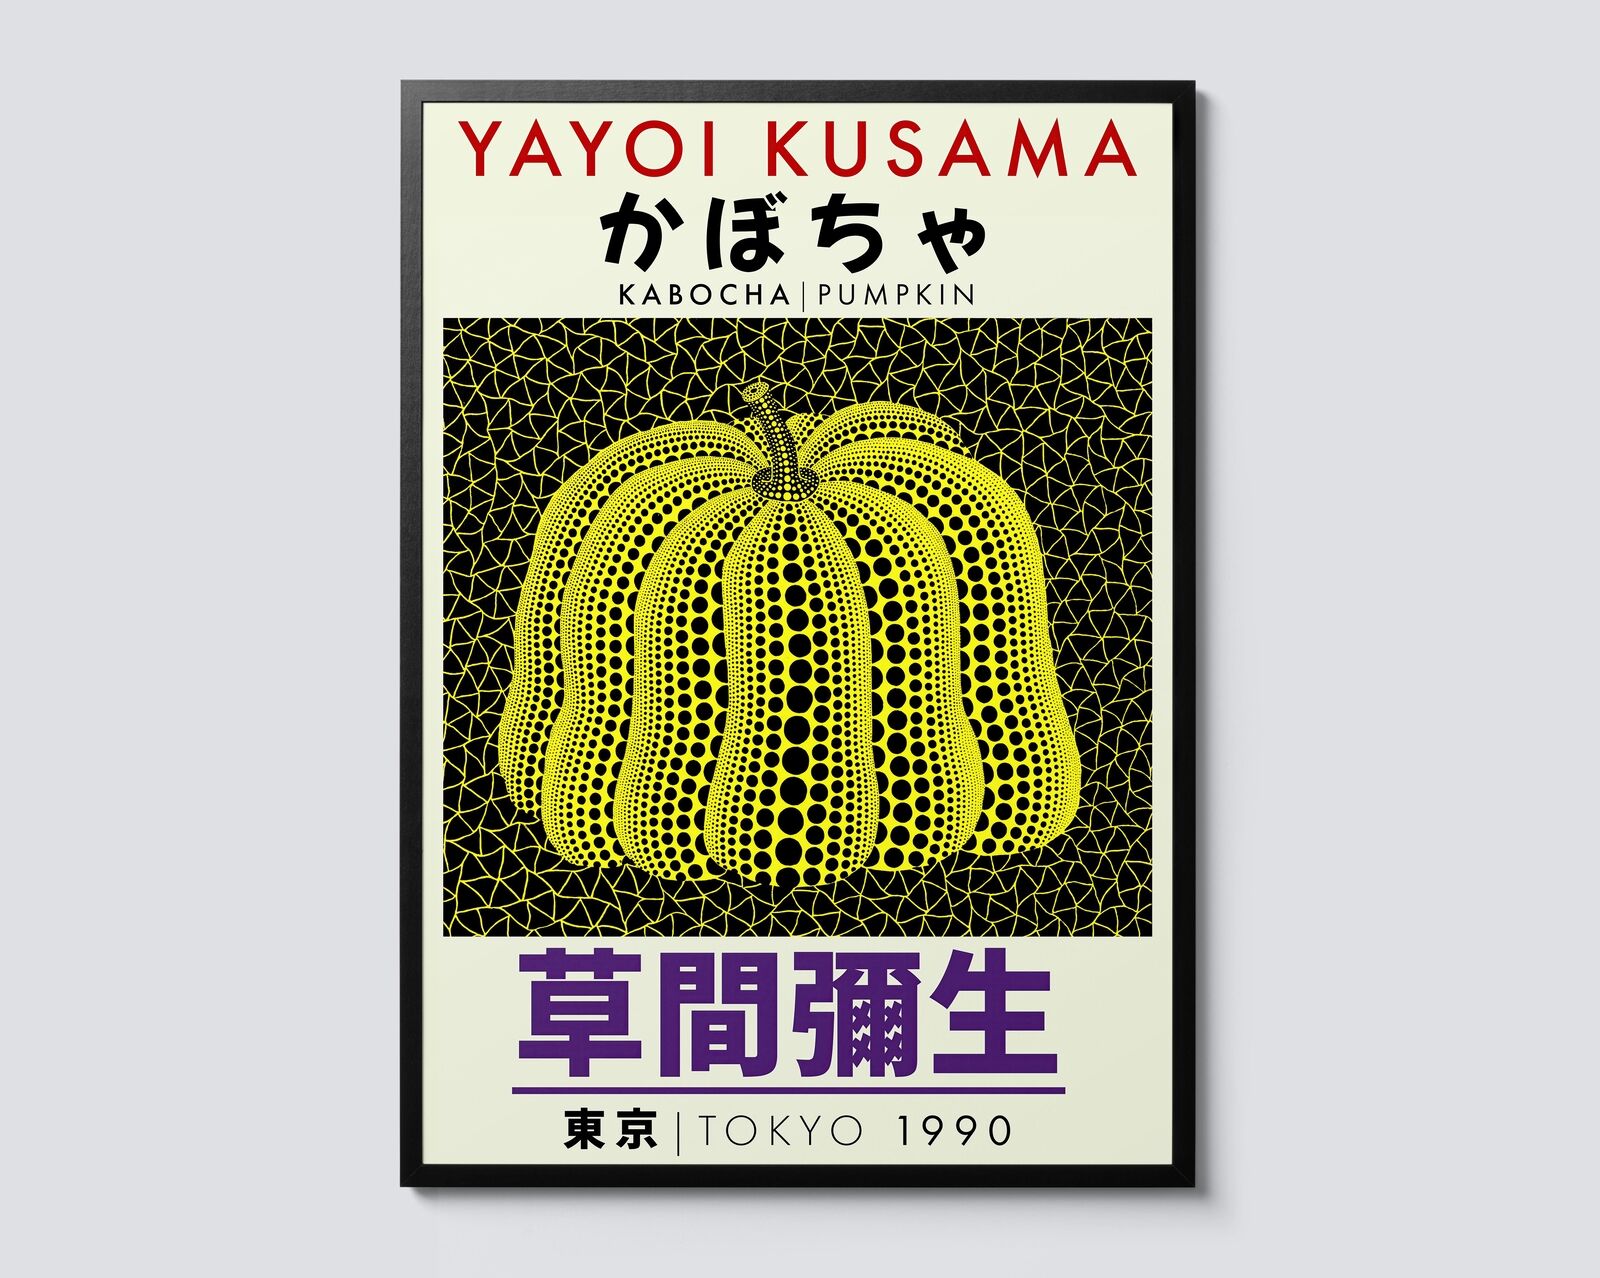 Green Pumpkin, Yayoi Kusama Modern Abstract Print, Japanese Pop Art Wall Decor,